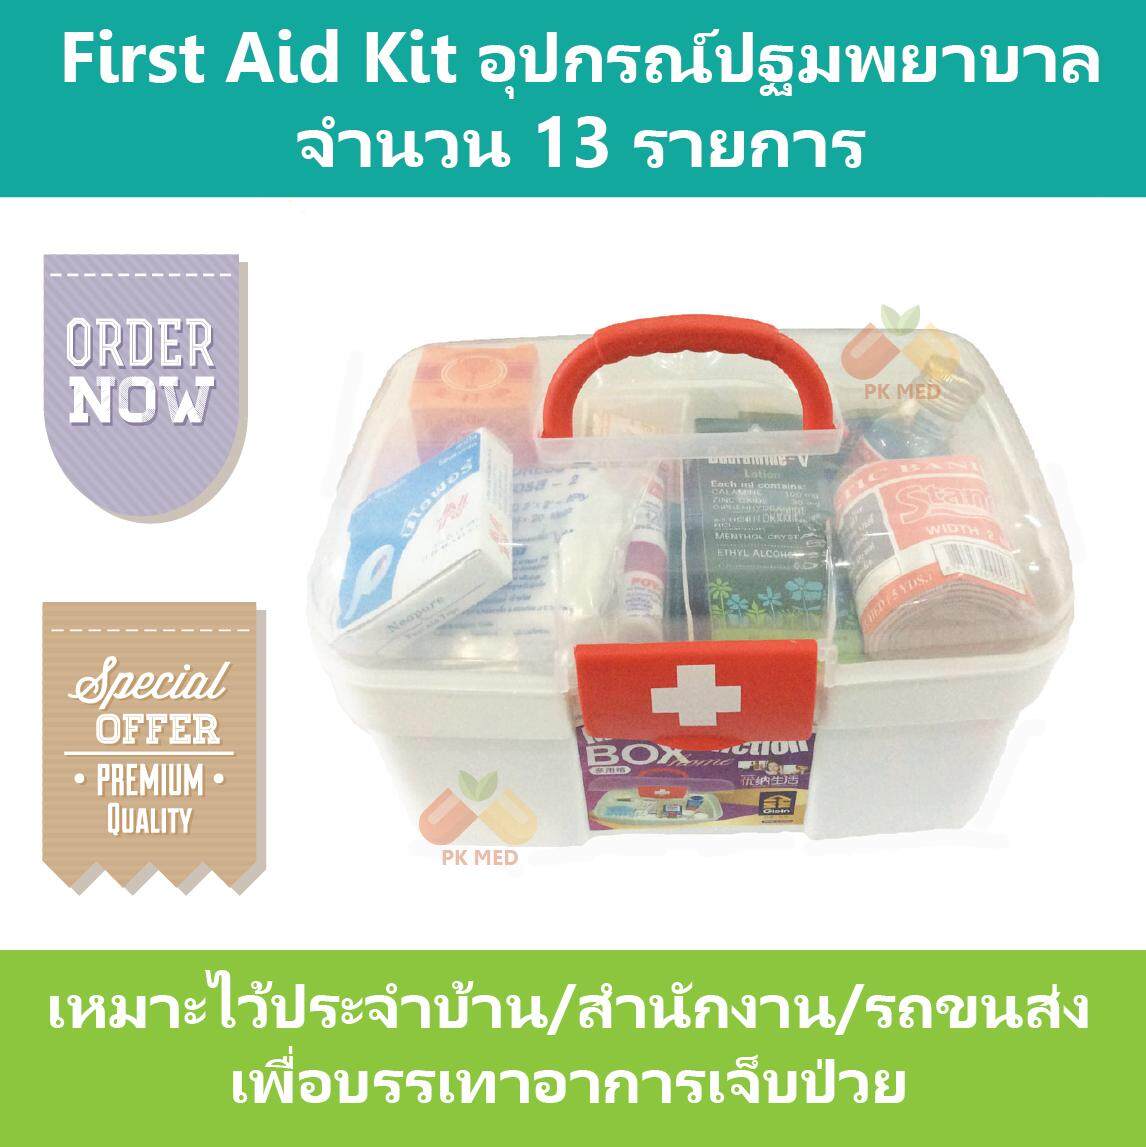 First Aid Kit ชุดปฐมพยาบาล จำนวน 13 รายการ บรรจุในกล่องอย่างดี